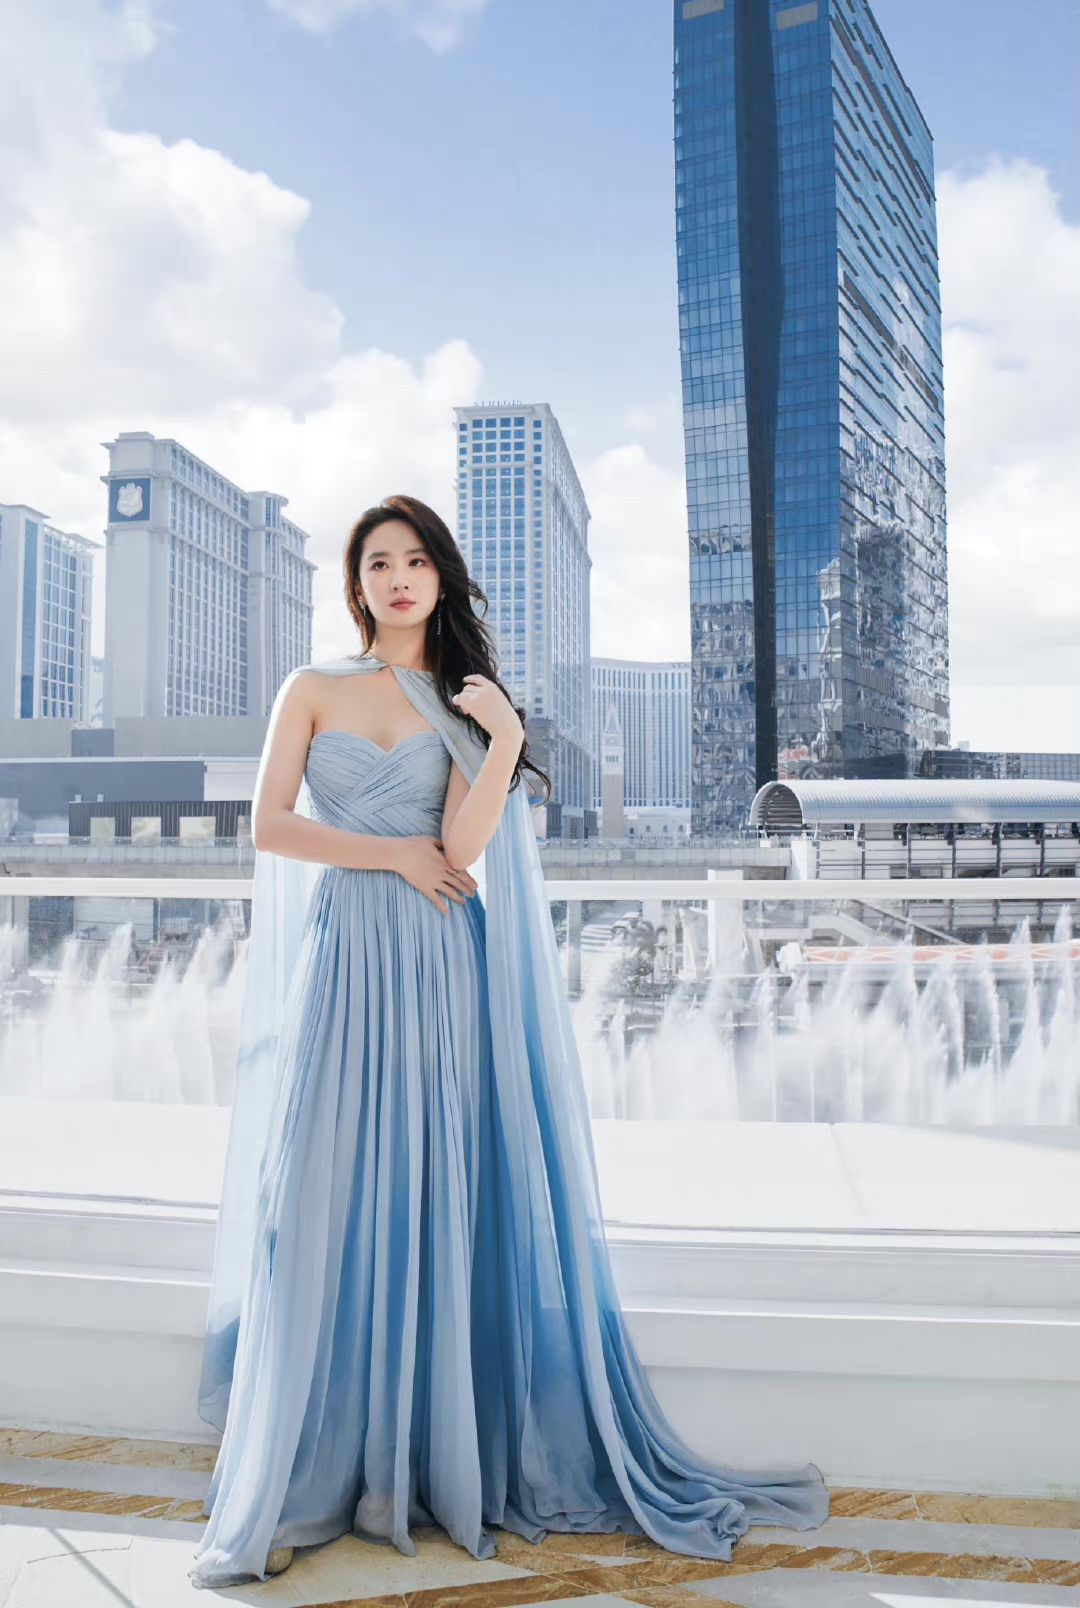 刘亦菲亮相澳门国际电影节红毯造型!一袭淡蓝色轻纱长裙配以披发